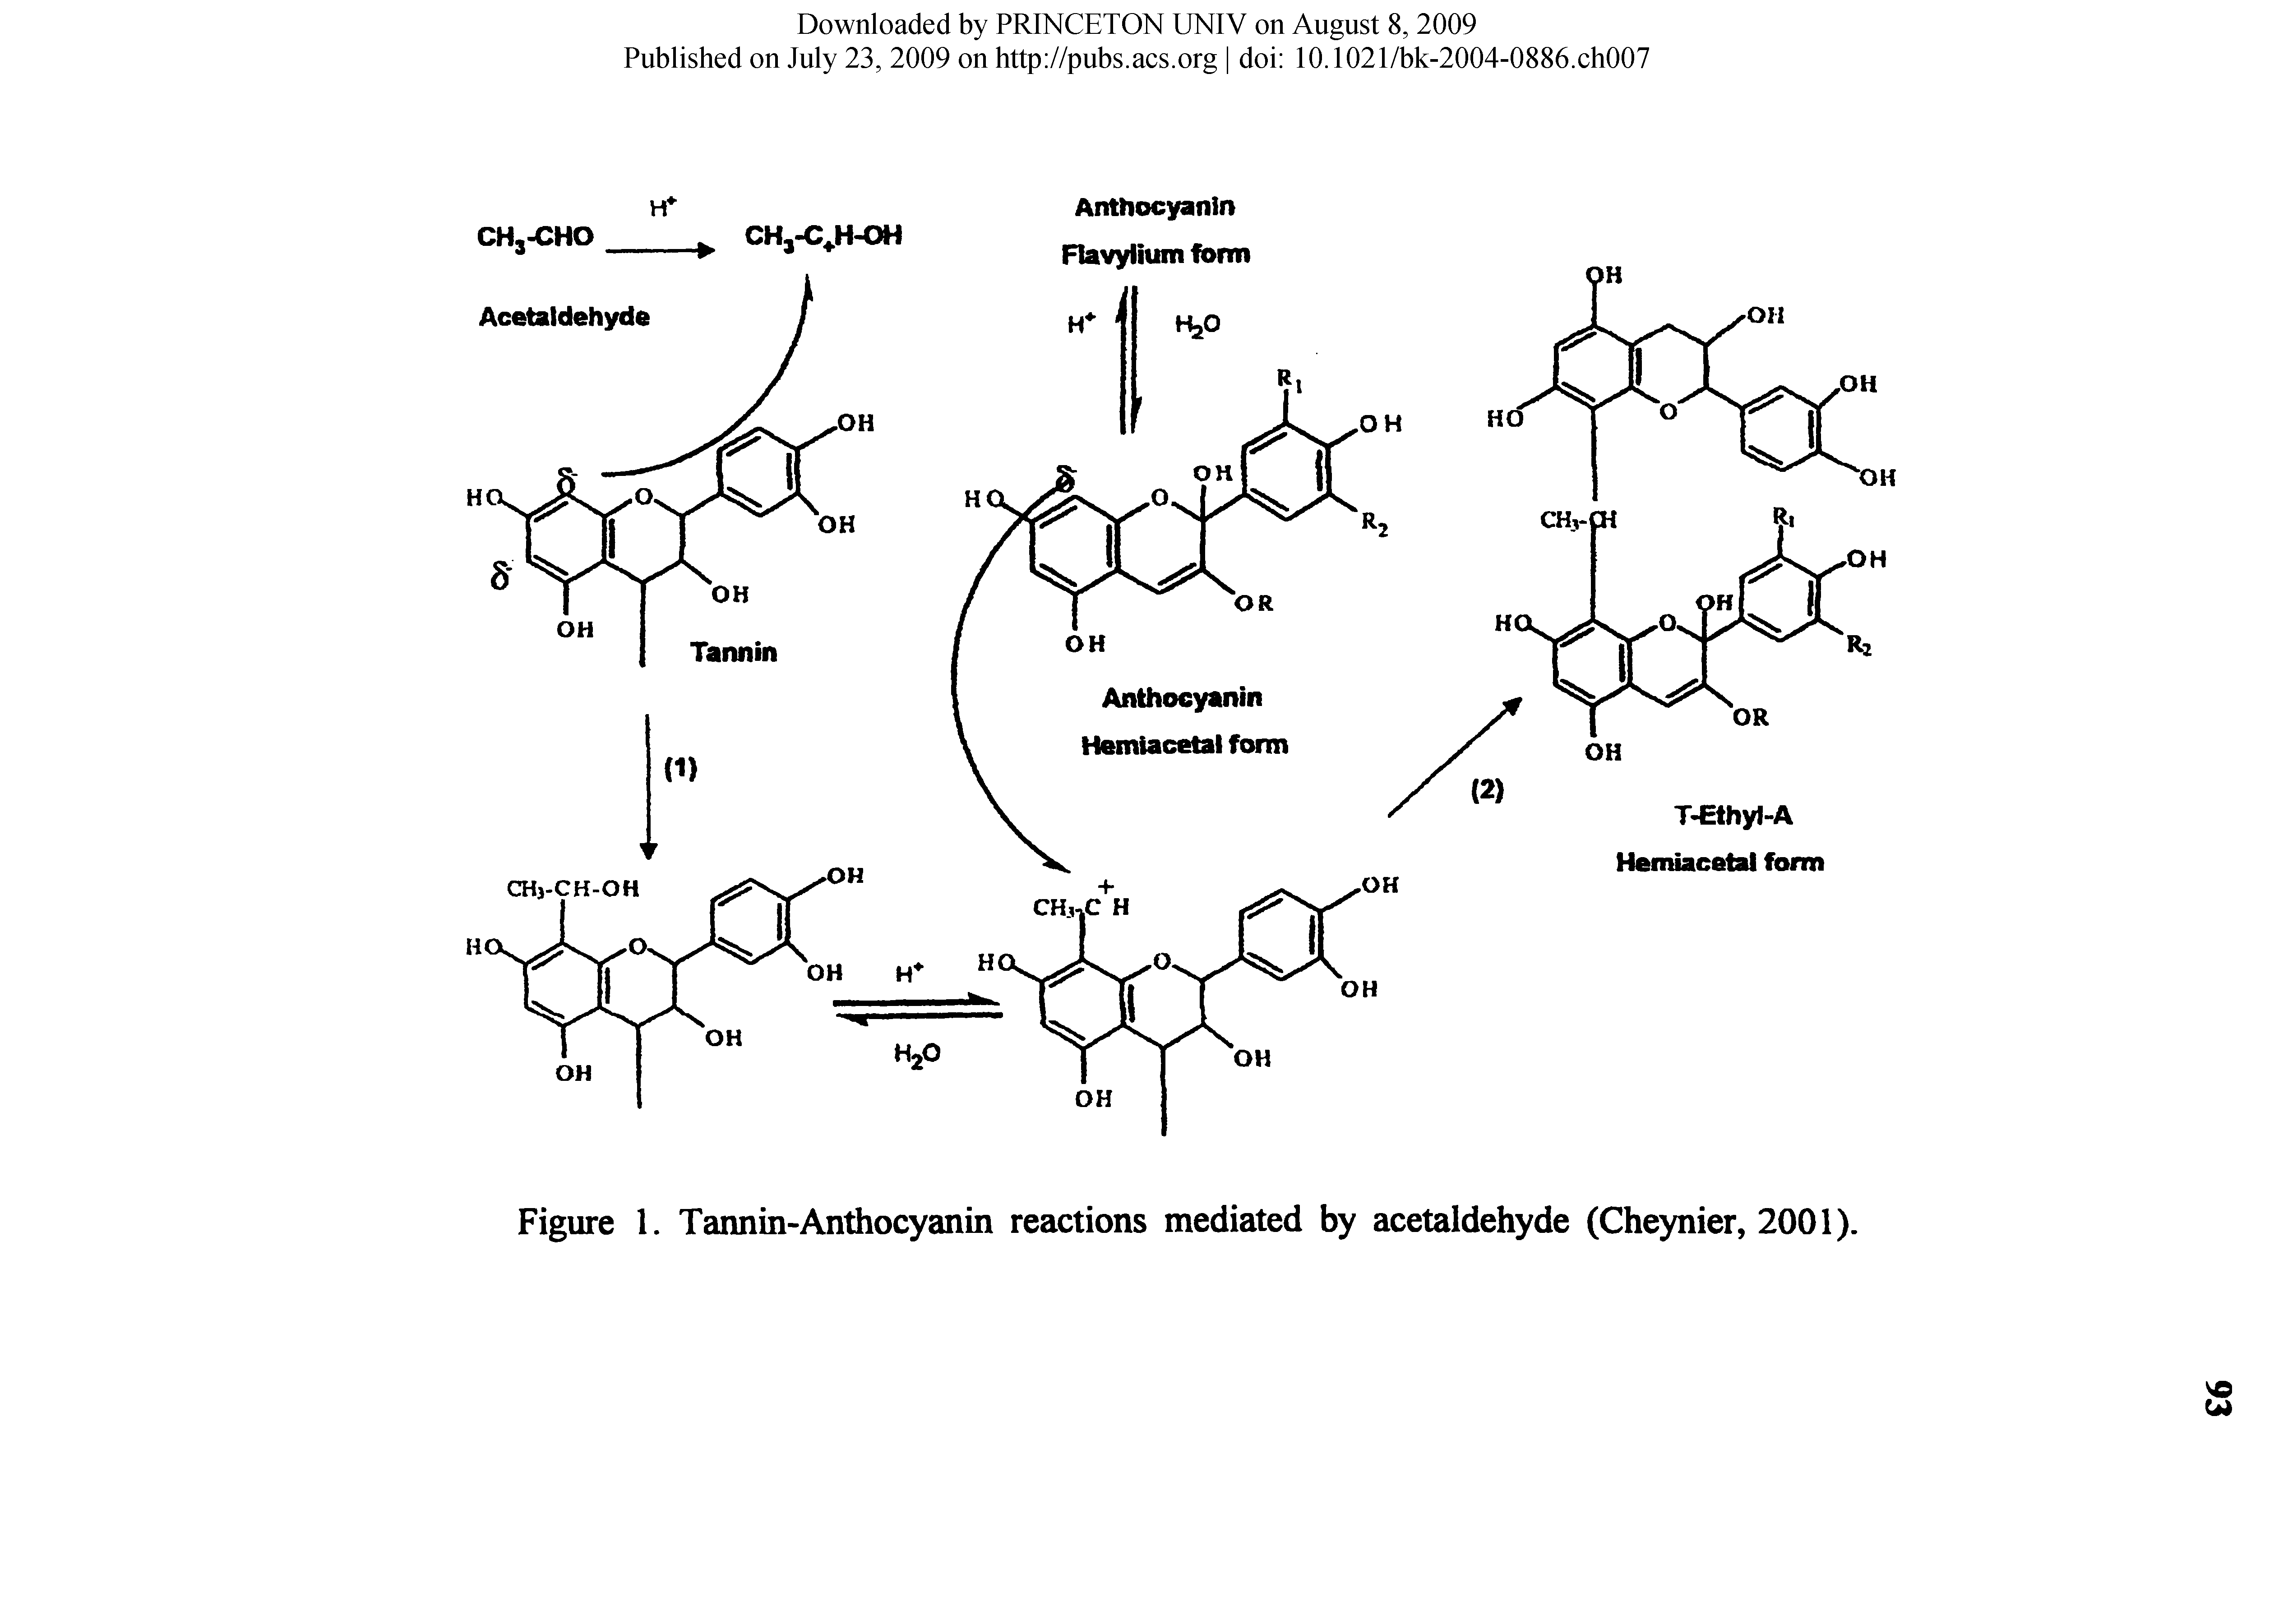 Figure 1. Tannin-Anthocyanin reactions mediated by acetaldehyde (Cheynier, 2001).